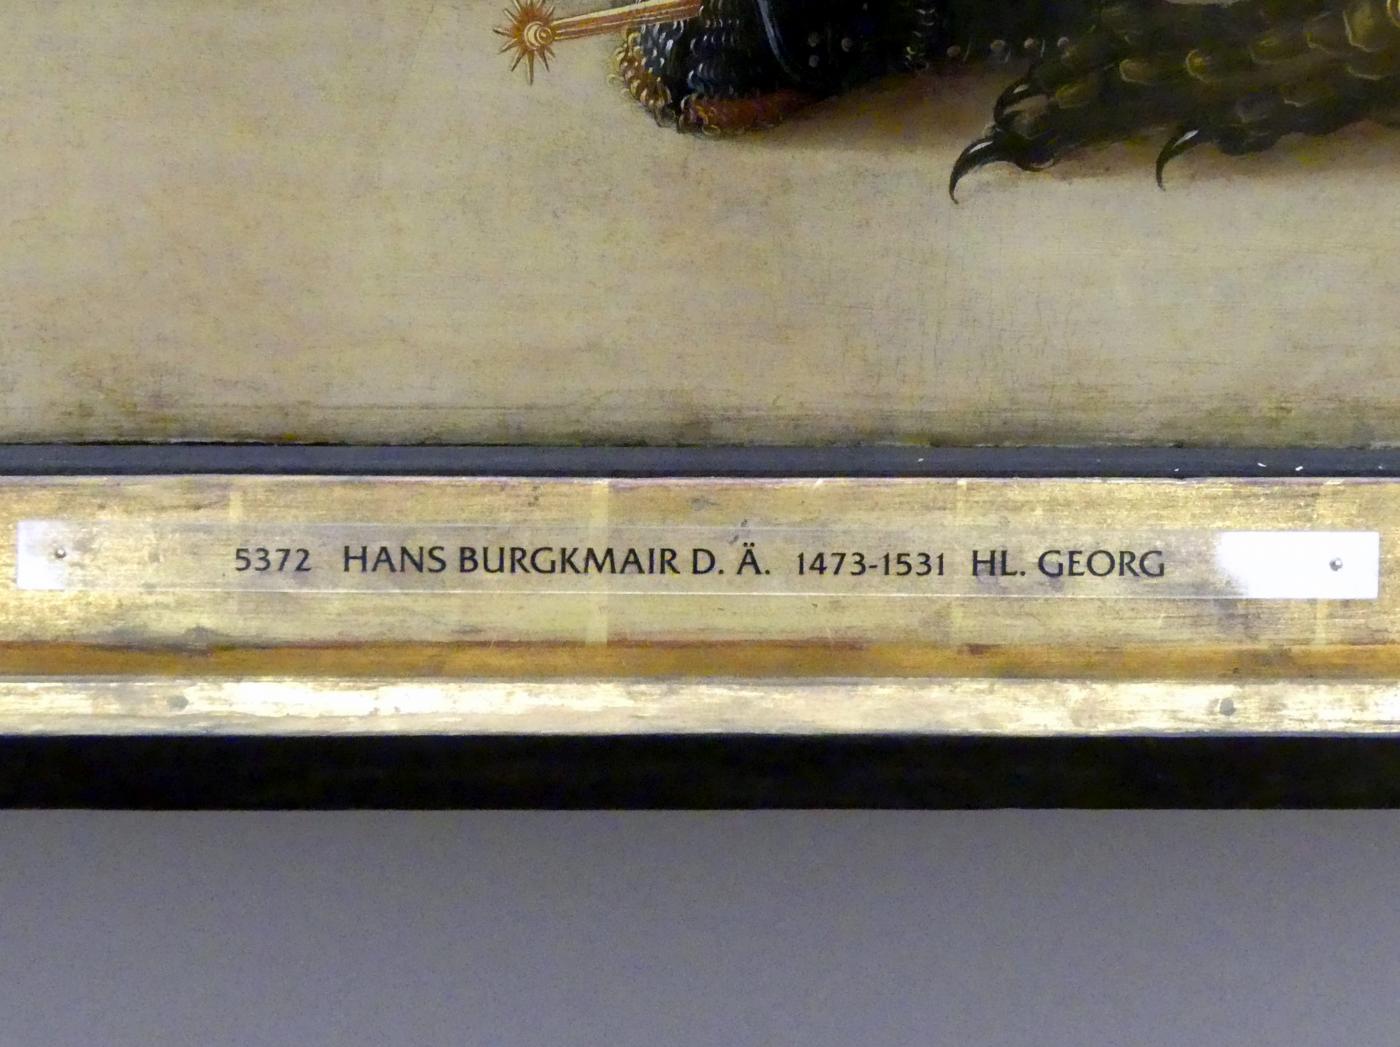 Hans Burgkmair der Ältere (1490–1529), Außenseiten der Flügel des Kreuzigungsaltars, München, Alte Pinakothek, Erdgeschoss Saal I, 1519, Bild 4/4